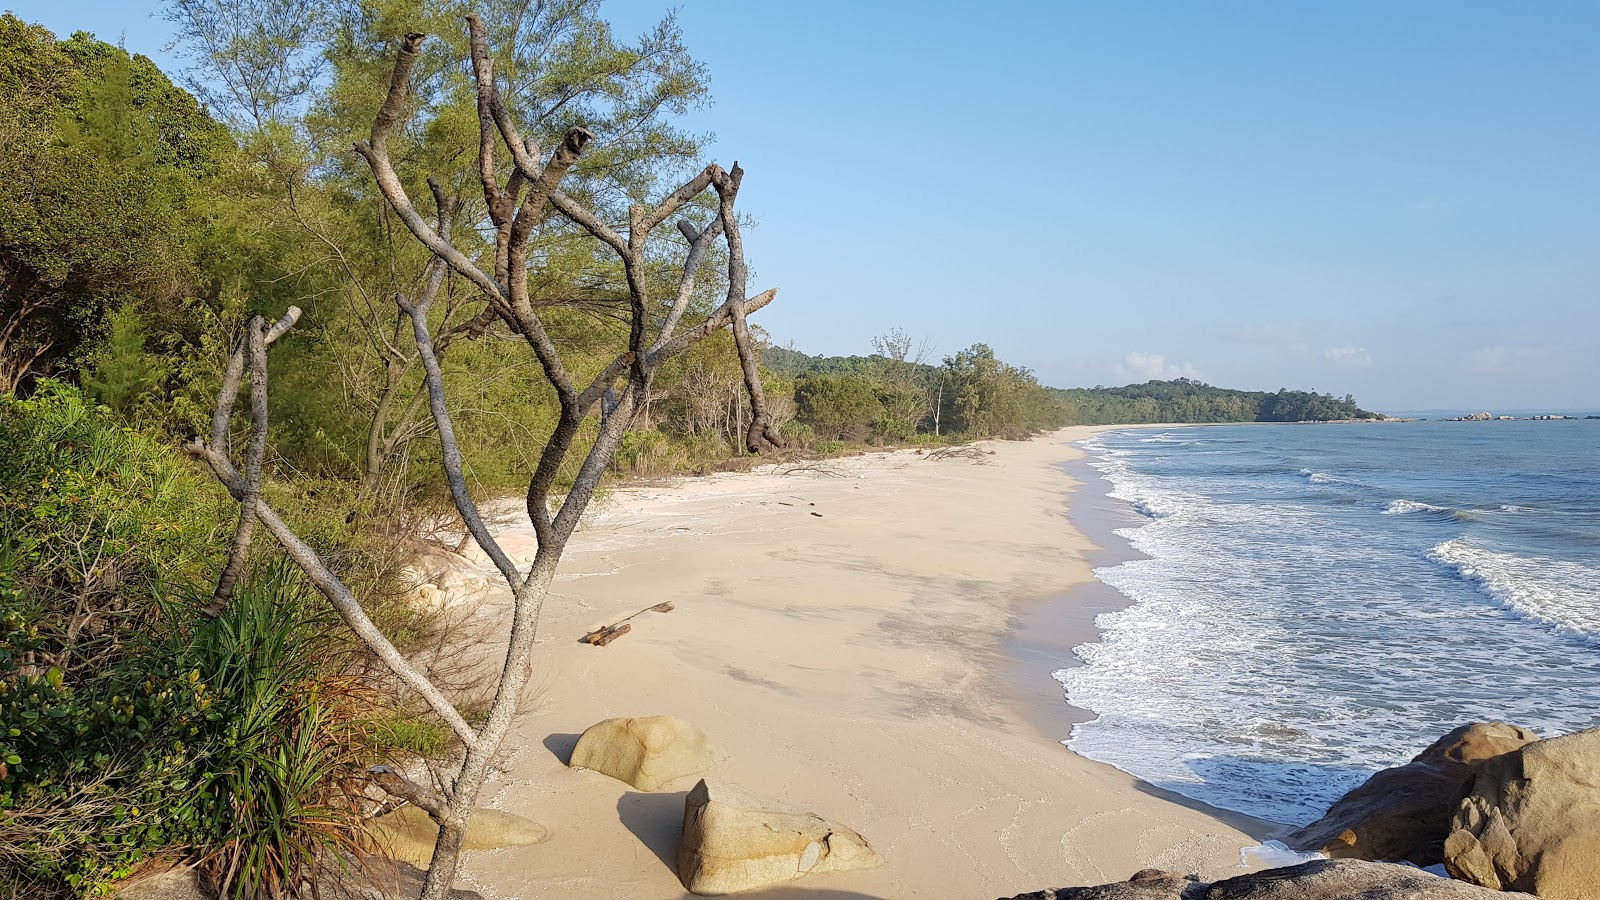 Foto de Pelindung Beach com areia brilhante superfície